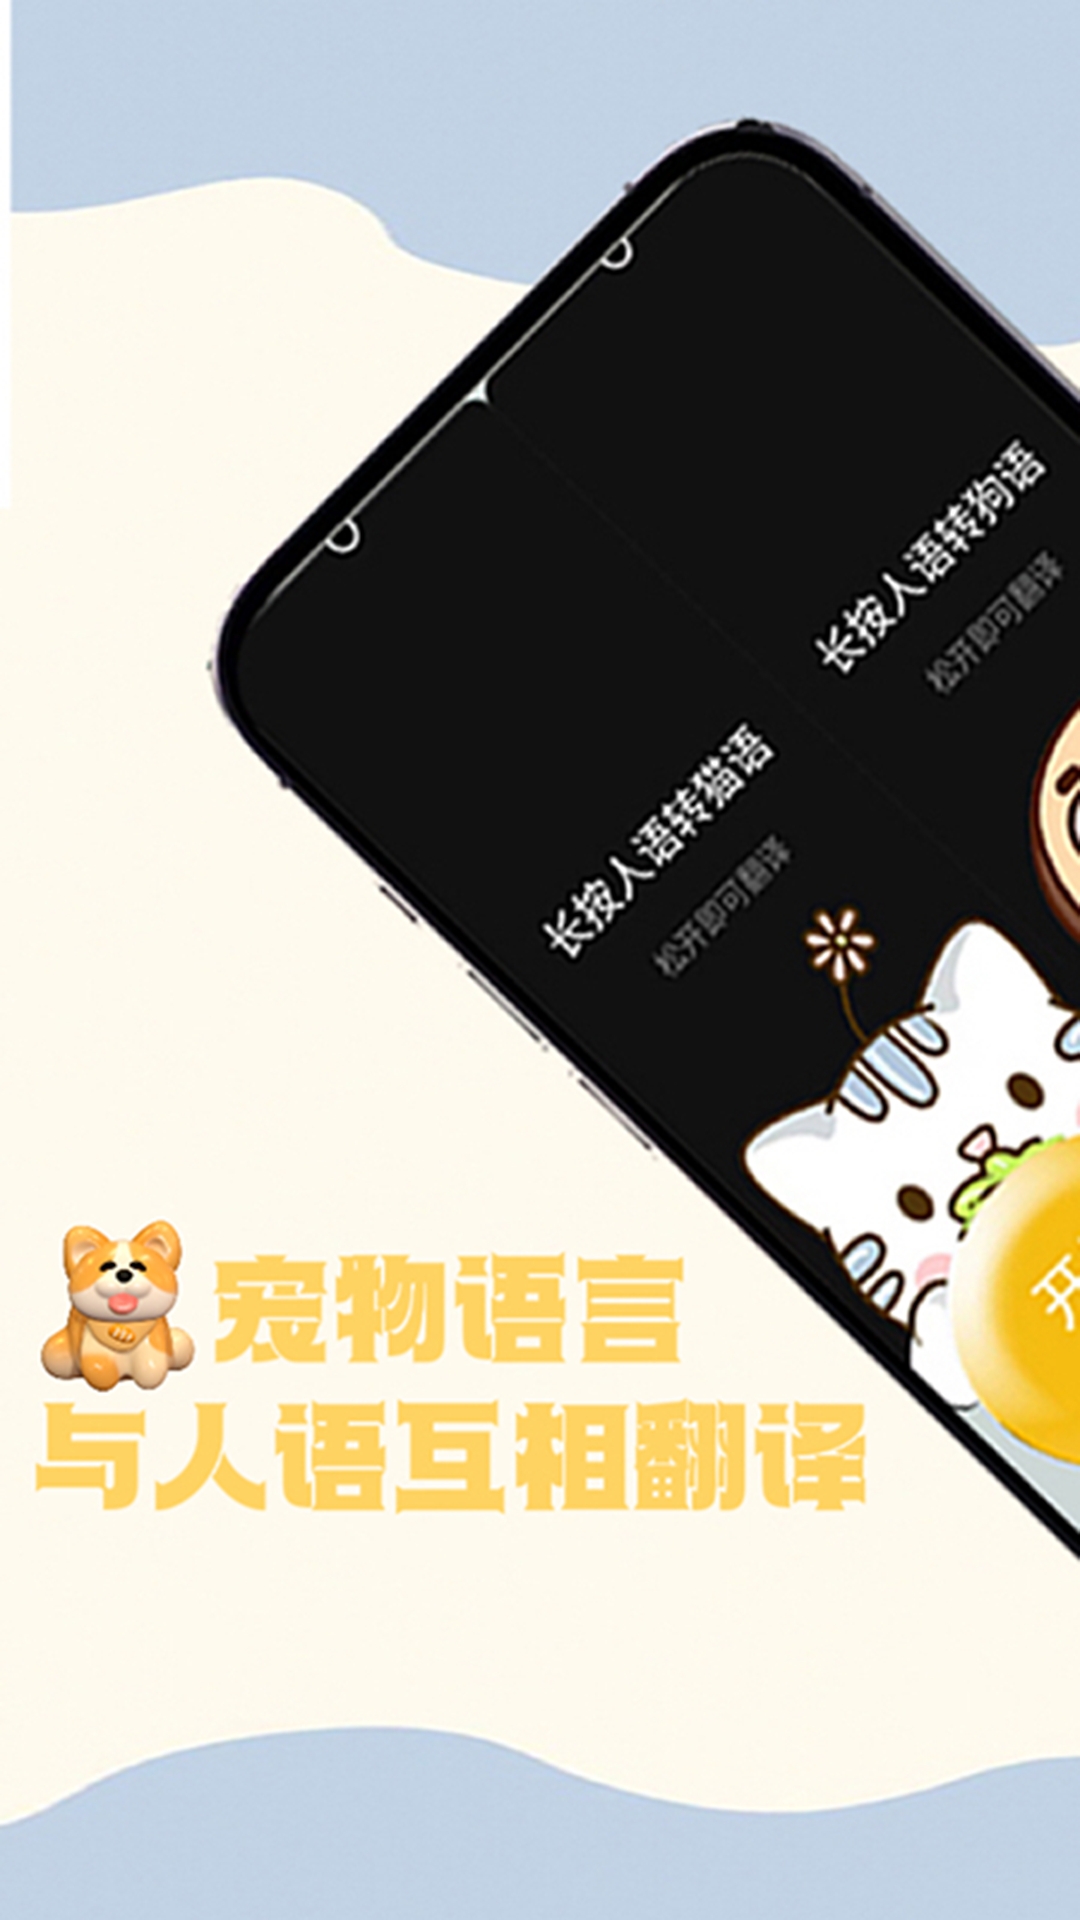 猫狗交谈翻译器app下载